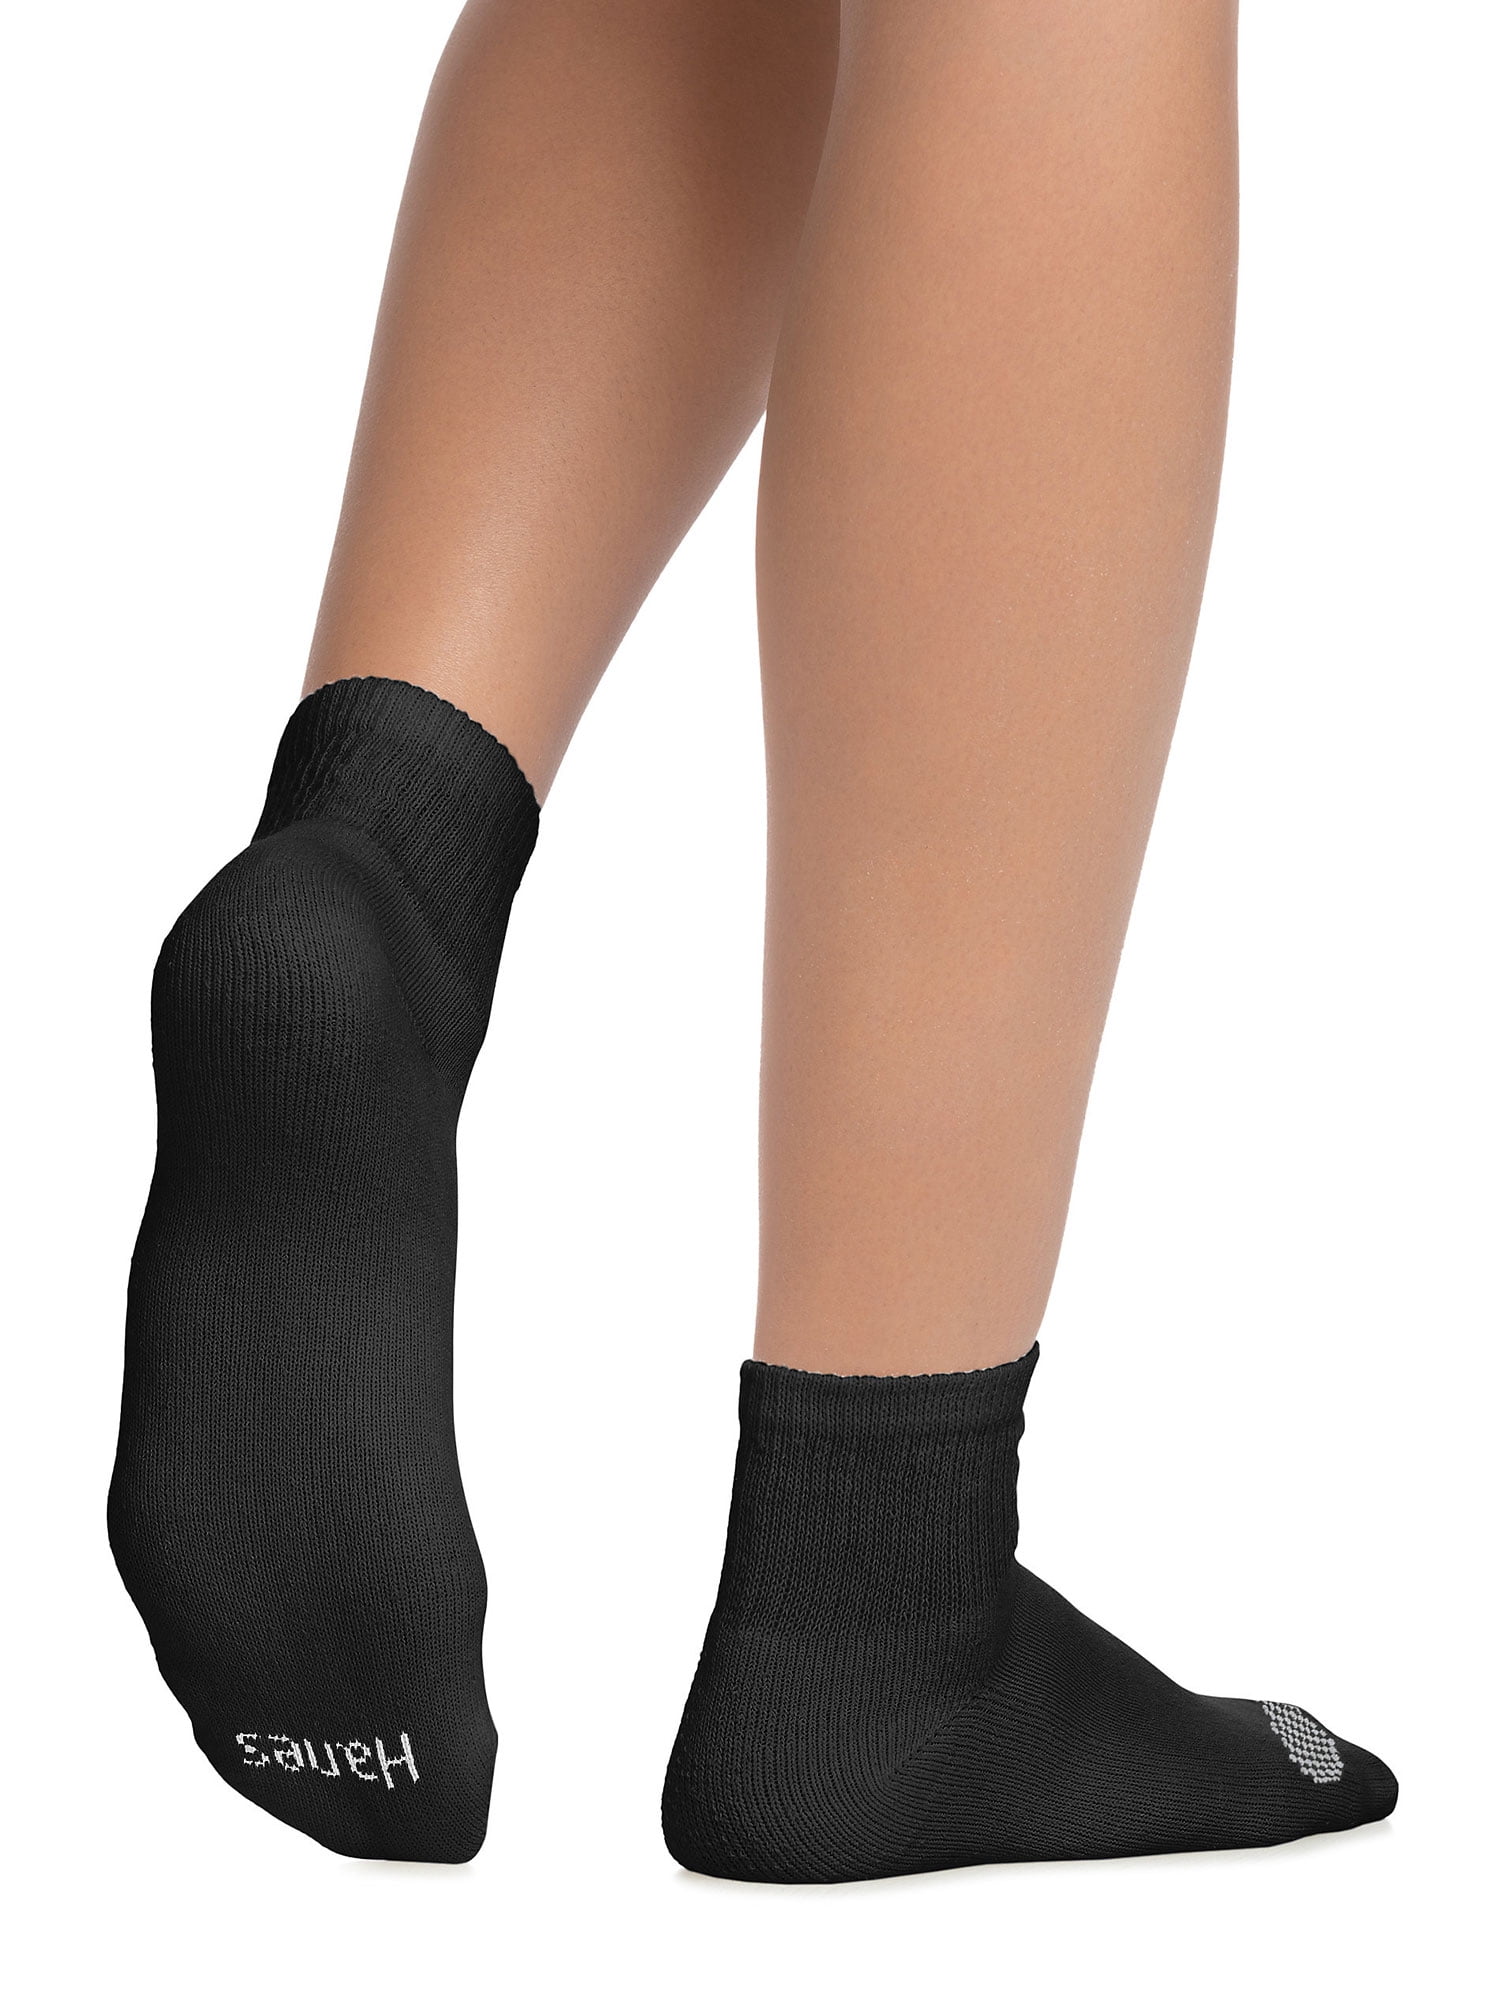 Happy Socks New Black /White Contrast 4 Pack Mens 8-12 Womens 10-13 Socks 